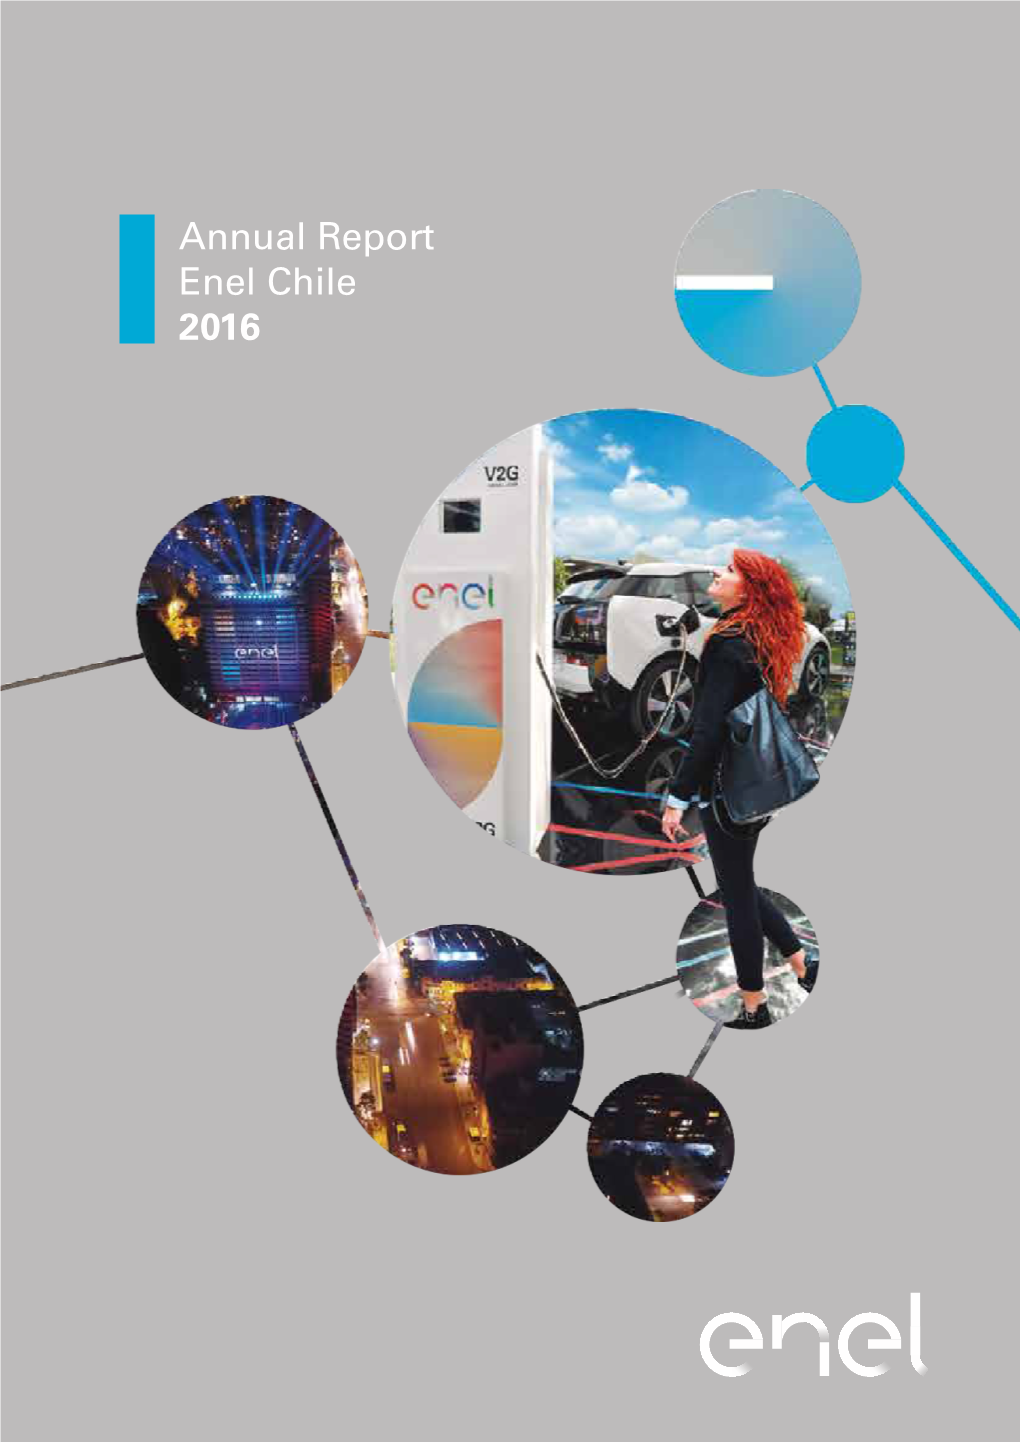 Annual Report Enel Chile 2016 Annual Report Enel Chile 2016 Annual Report Santiago Stock Exchange ENELCHILE